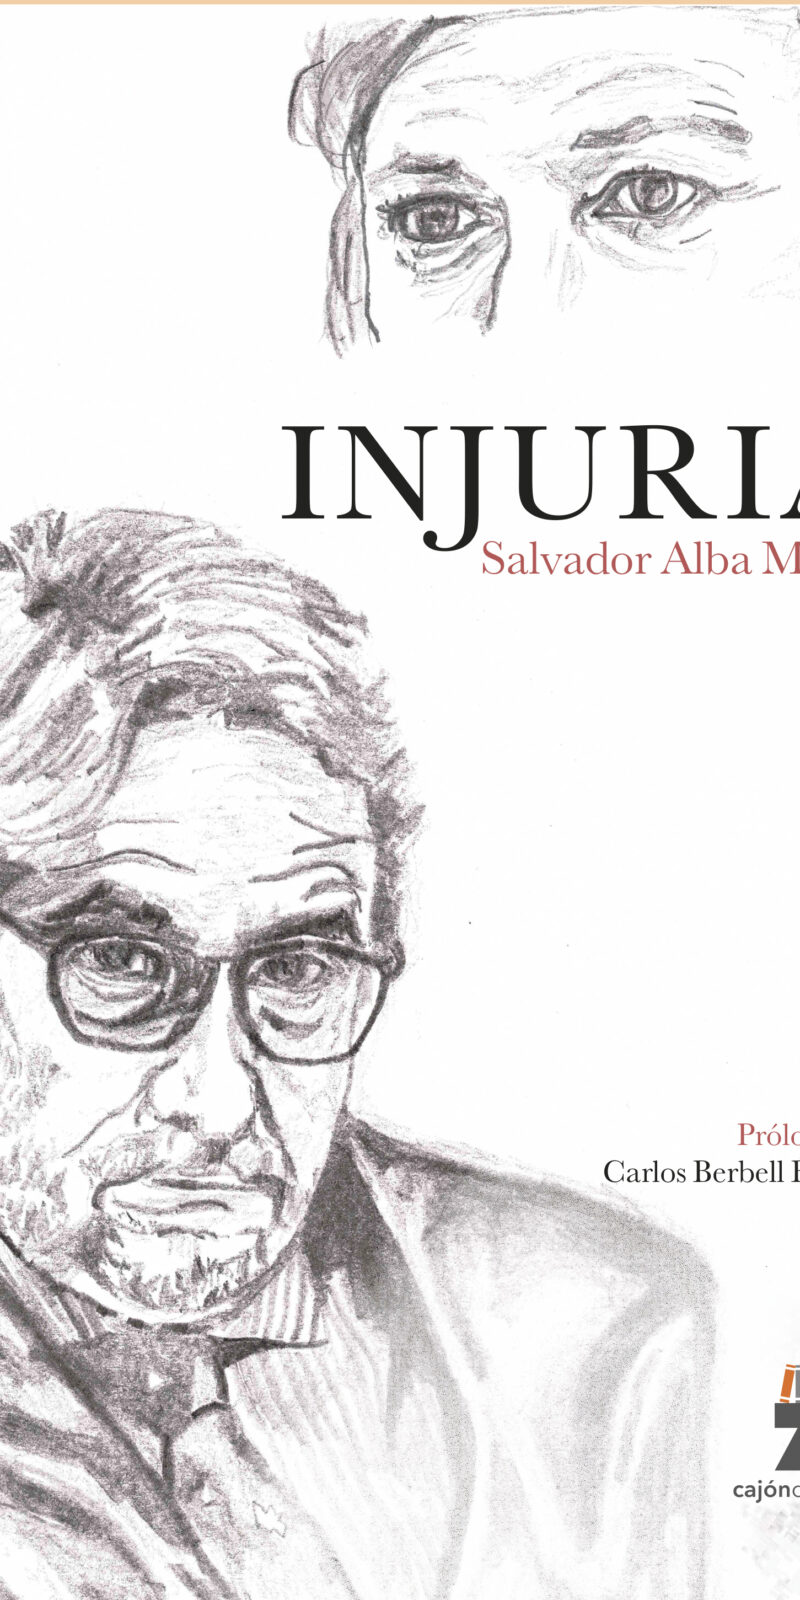 Salvador Alba es un magistrado y abogado, nacido en Baena( Córdoba) en 1970. Licenciado en Derecho por la Universidad de Córdoba accedió a la Carrera Judicial en 1997 por el turno libre, después de ejercer la abogacía,